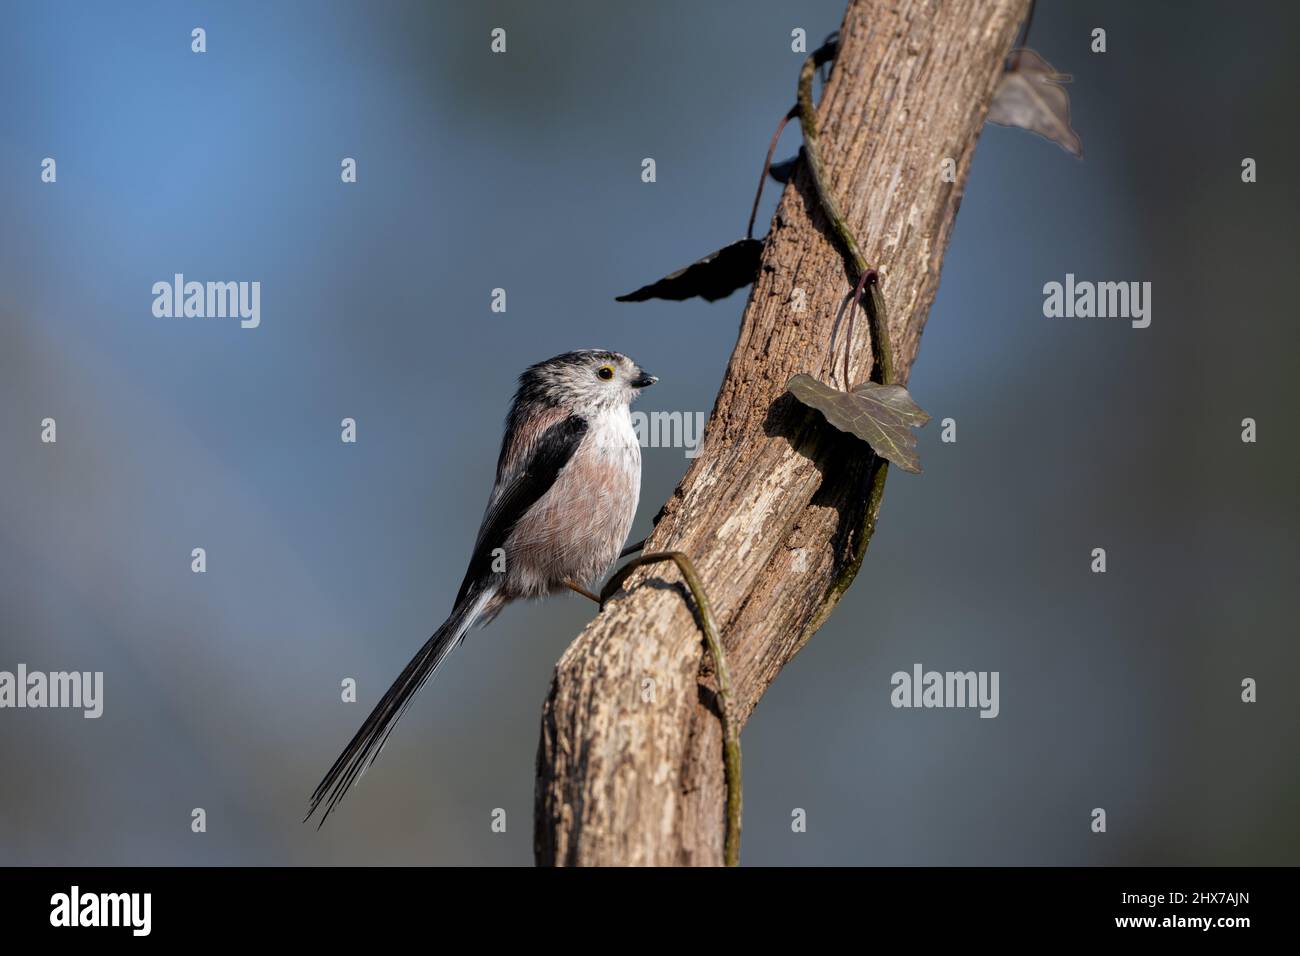 Una tita de cola larga se sienta en el tronco de un árbol Foto de stock